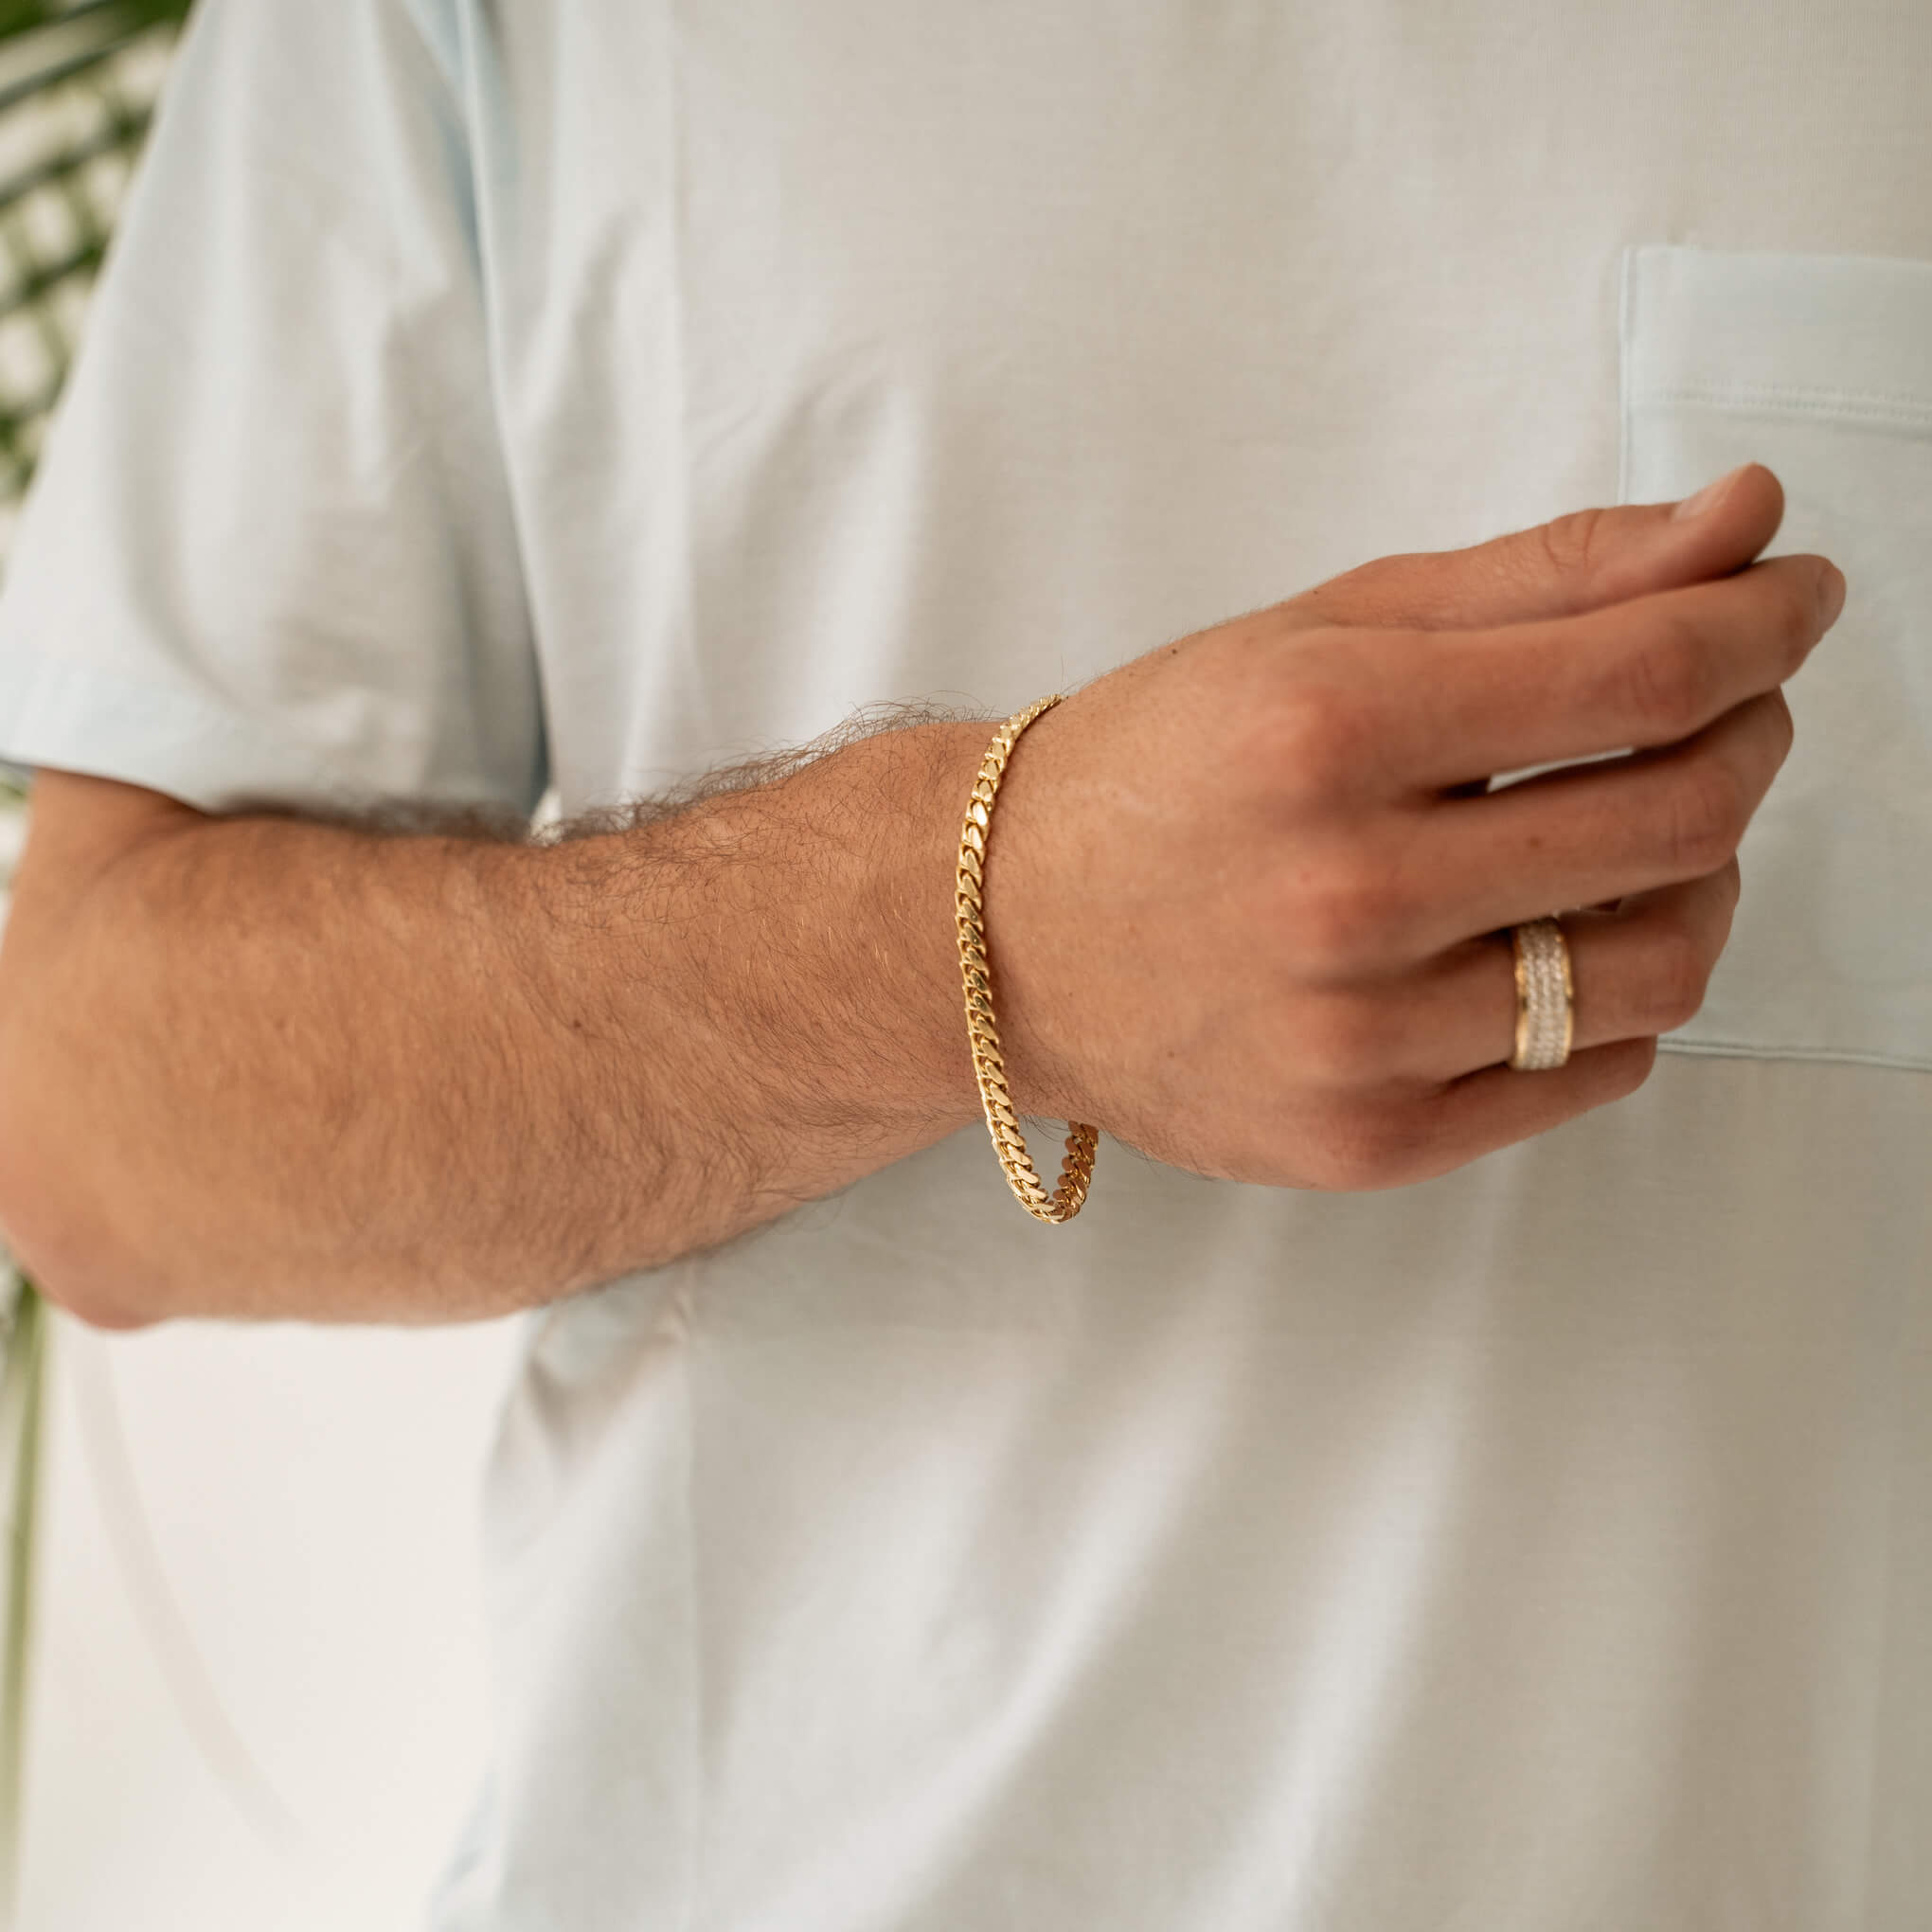 Thick Gold Chain Bracelet 8mm Cuban Bracelet Mens Gold 